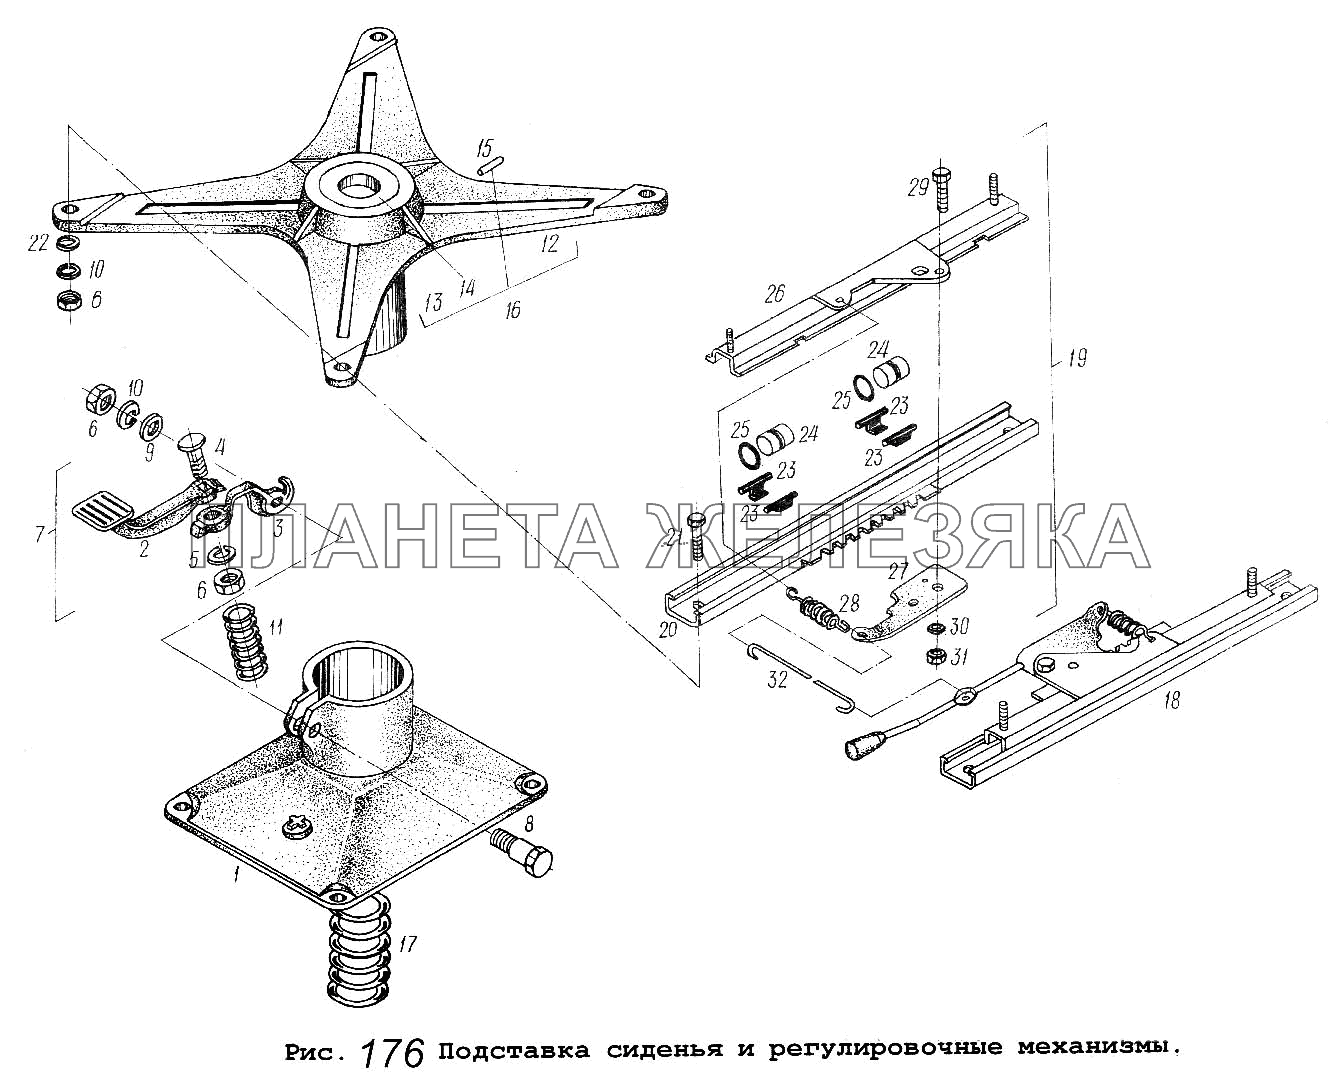 Подставка сиденья и регулировочные механизмы МАЗ-5516